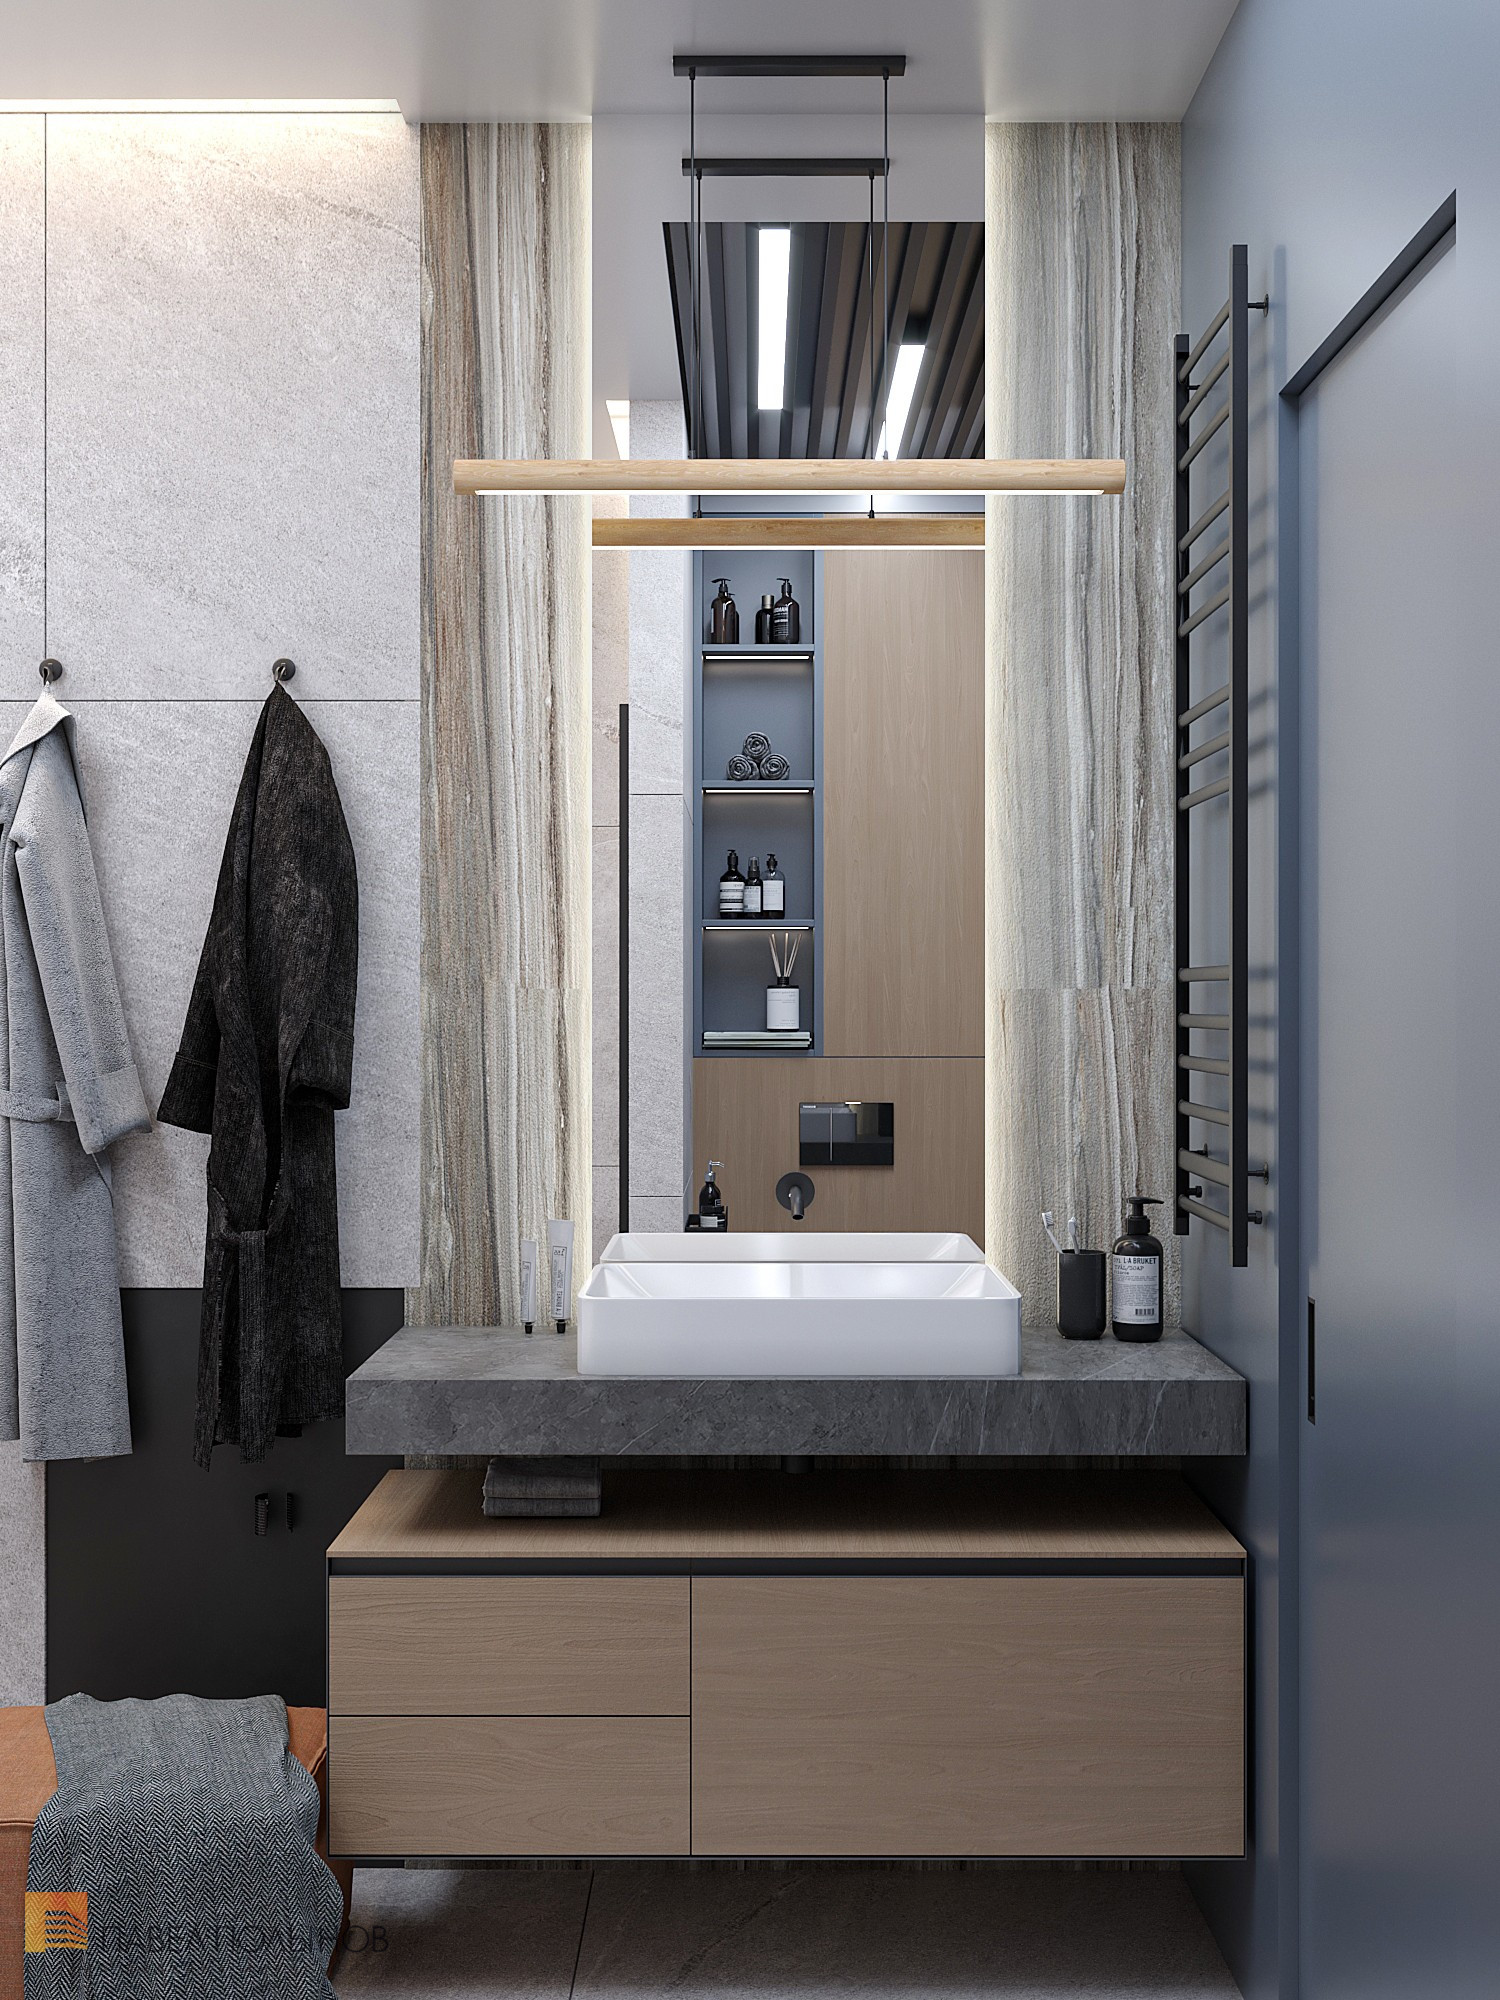 Фото дизайн интерьера ванной комнаты из проекта «ЖК «Ренесанс», 81 кв.м.»